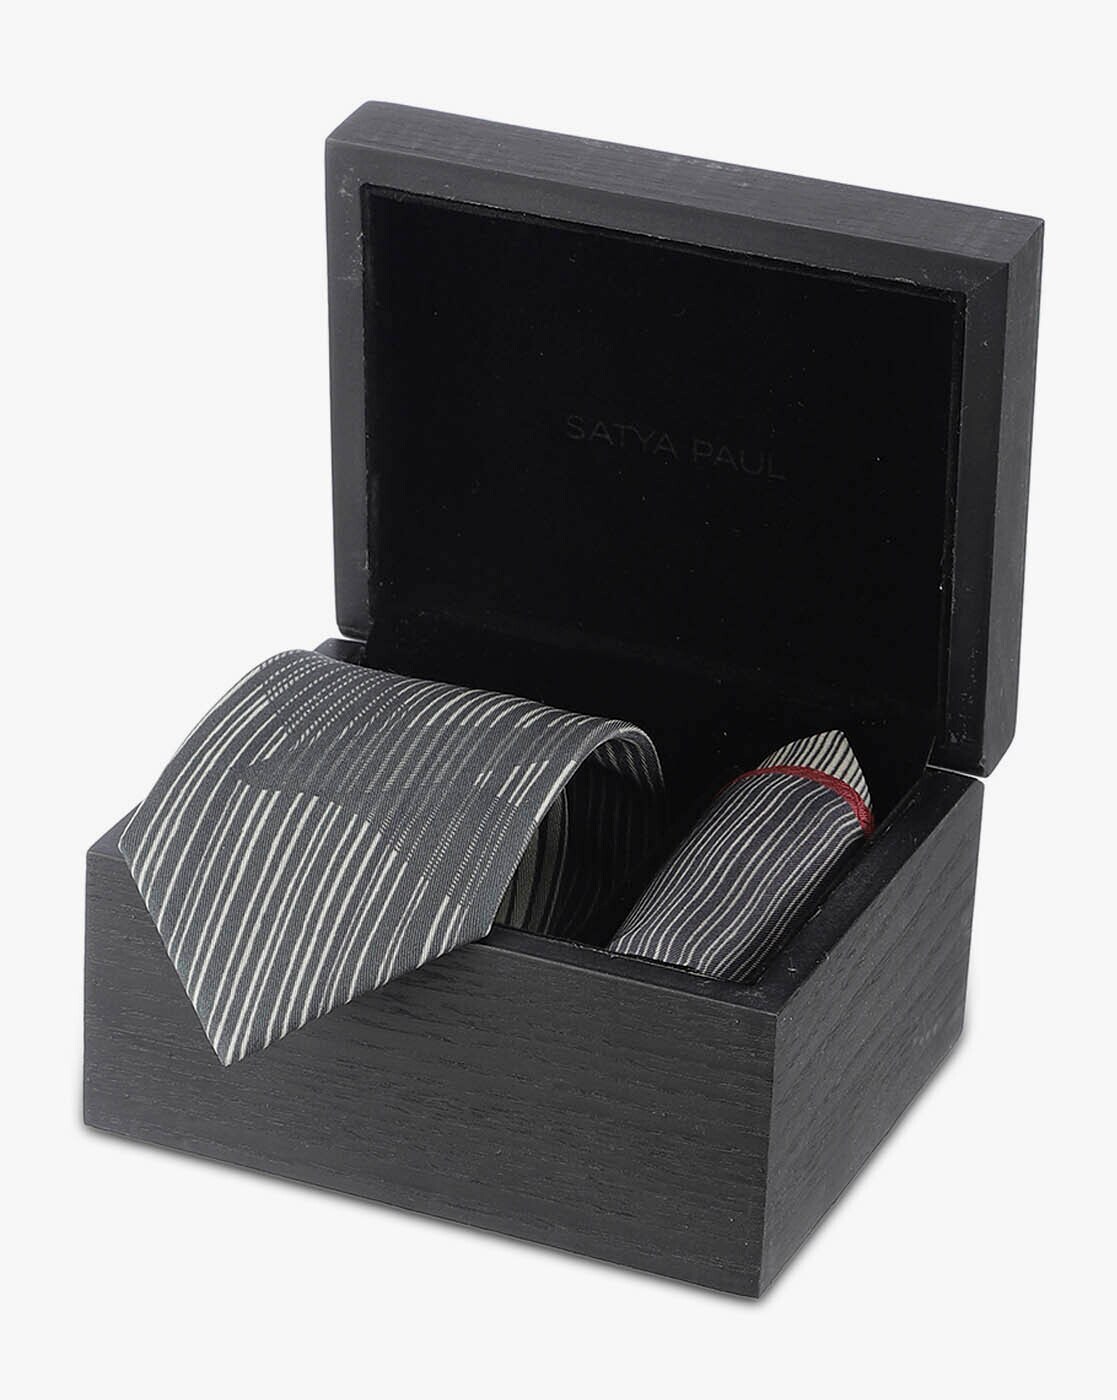 Buy Black Ties for Men by SATYA PAUL Online